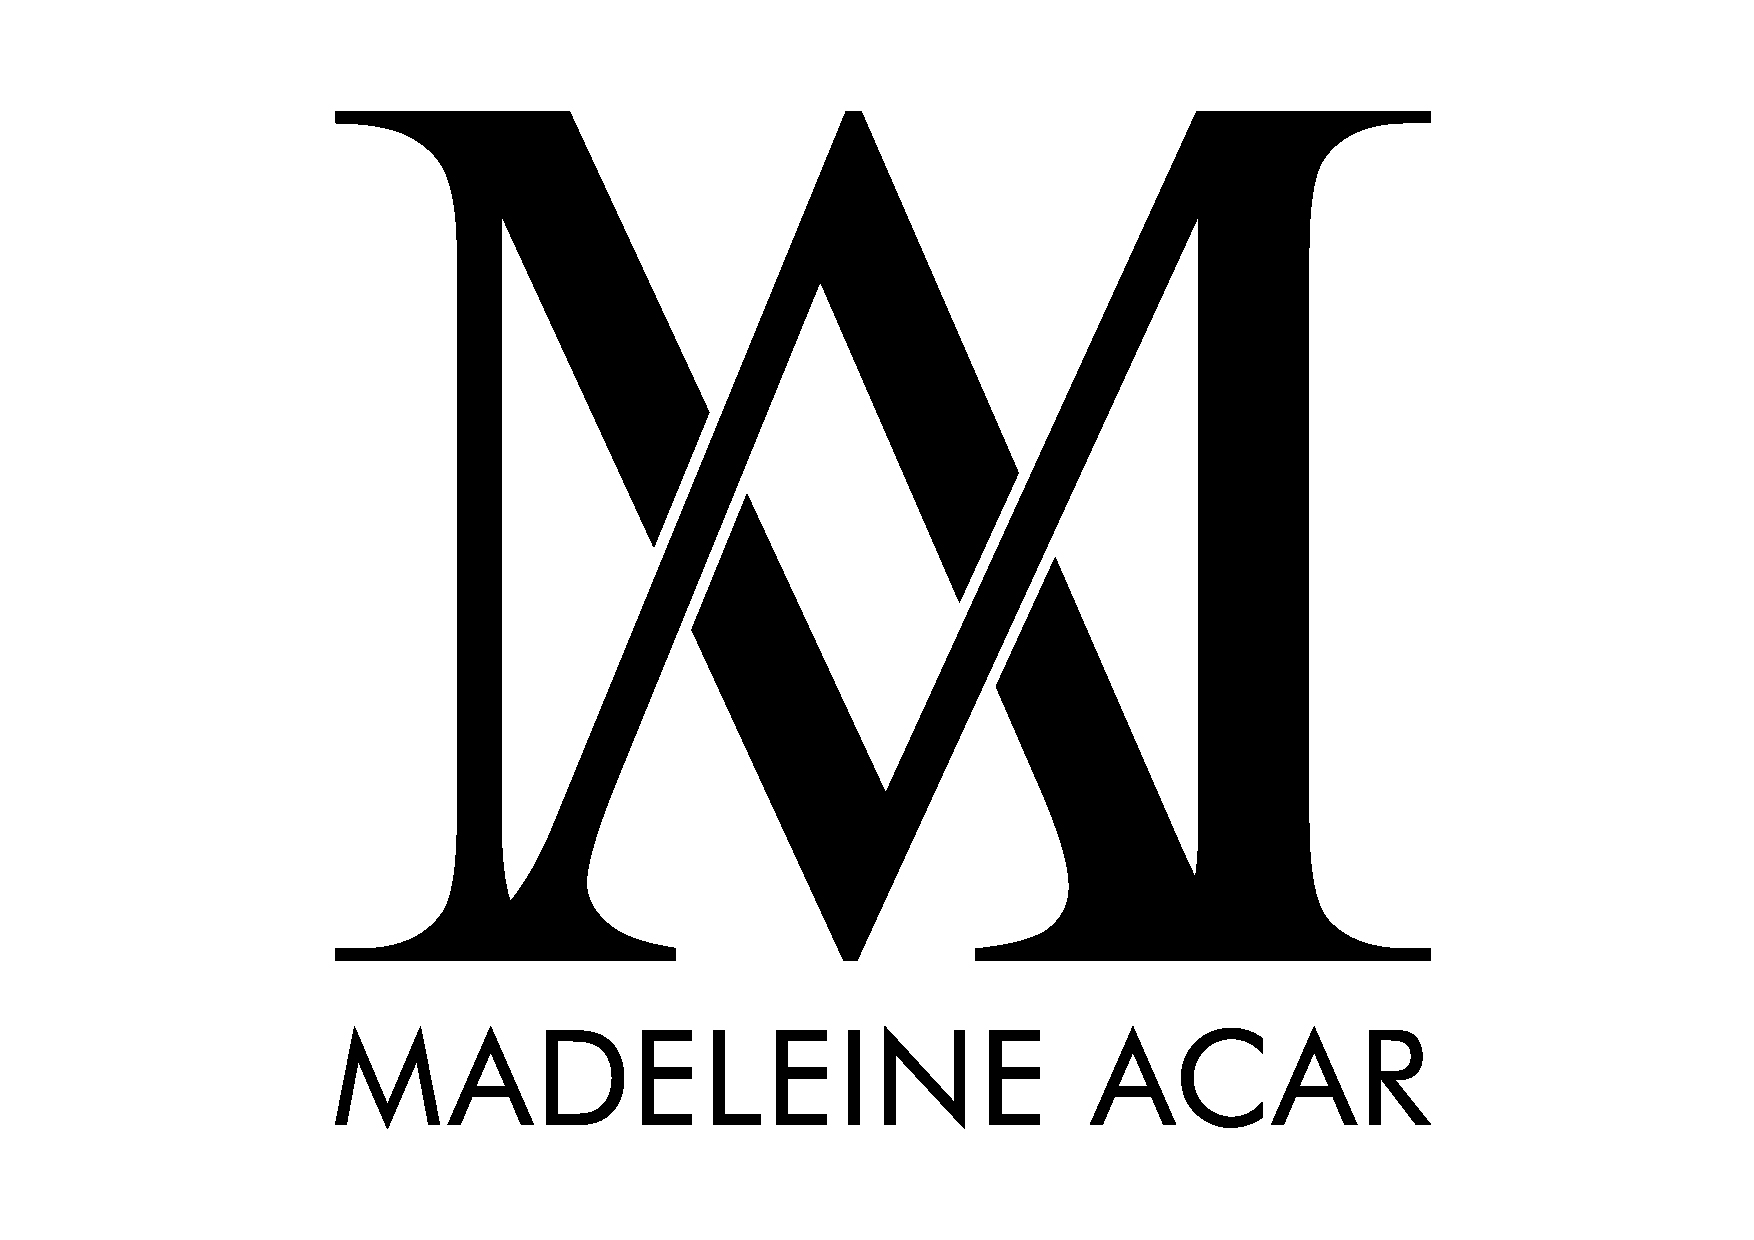 Madeleine Acar